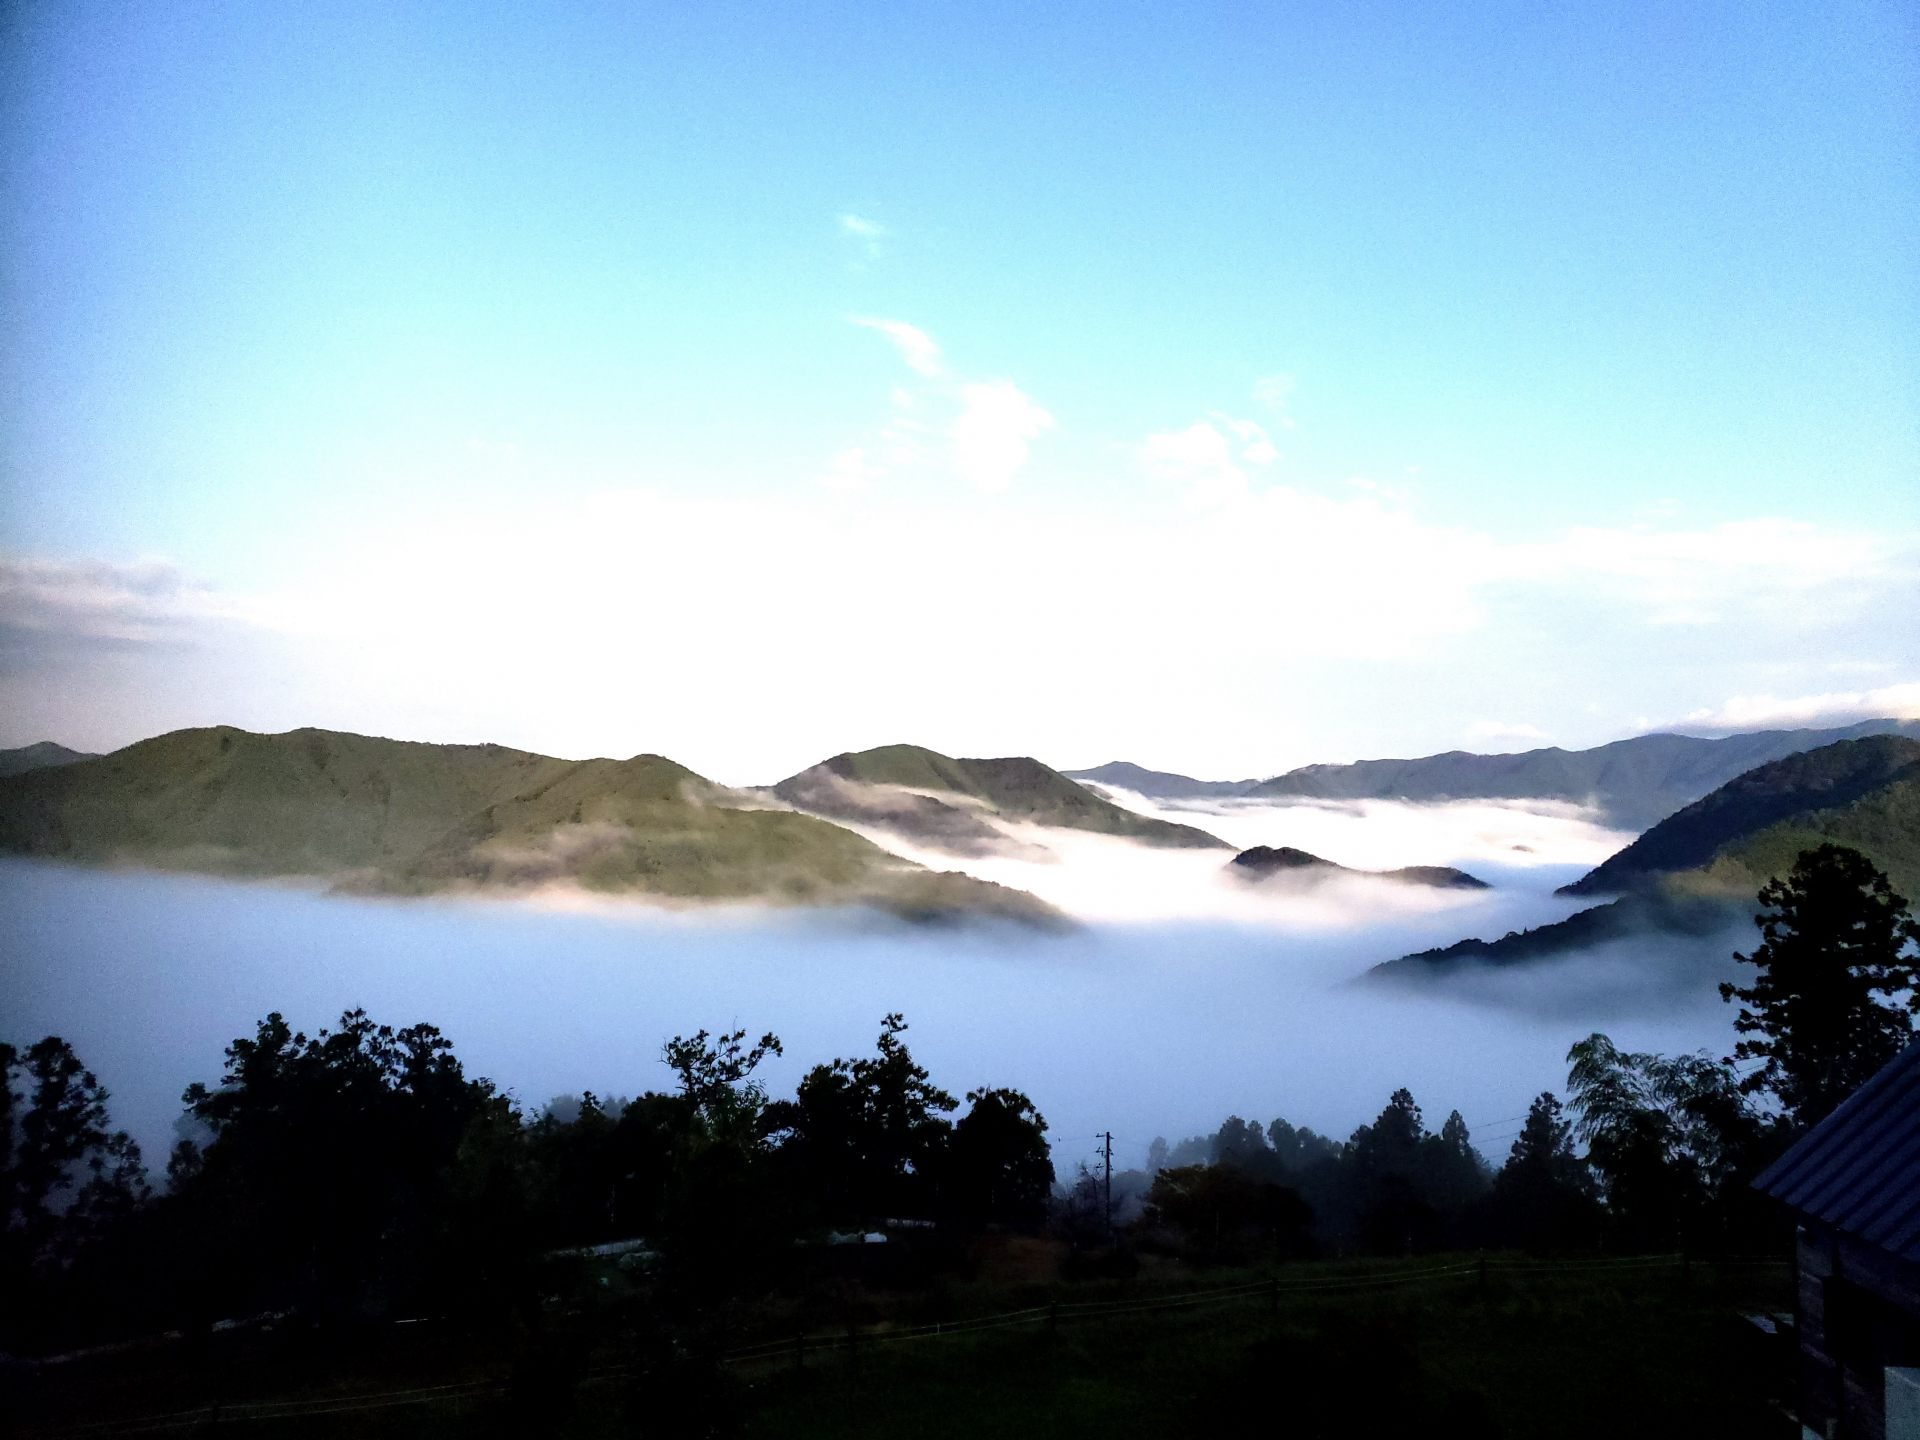 「高原」から見る雲海。昼夜の寒暖さが大きいときに出やすいそう。
©和歌山県観光連盟